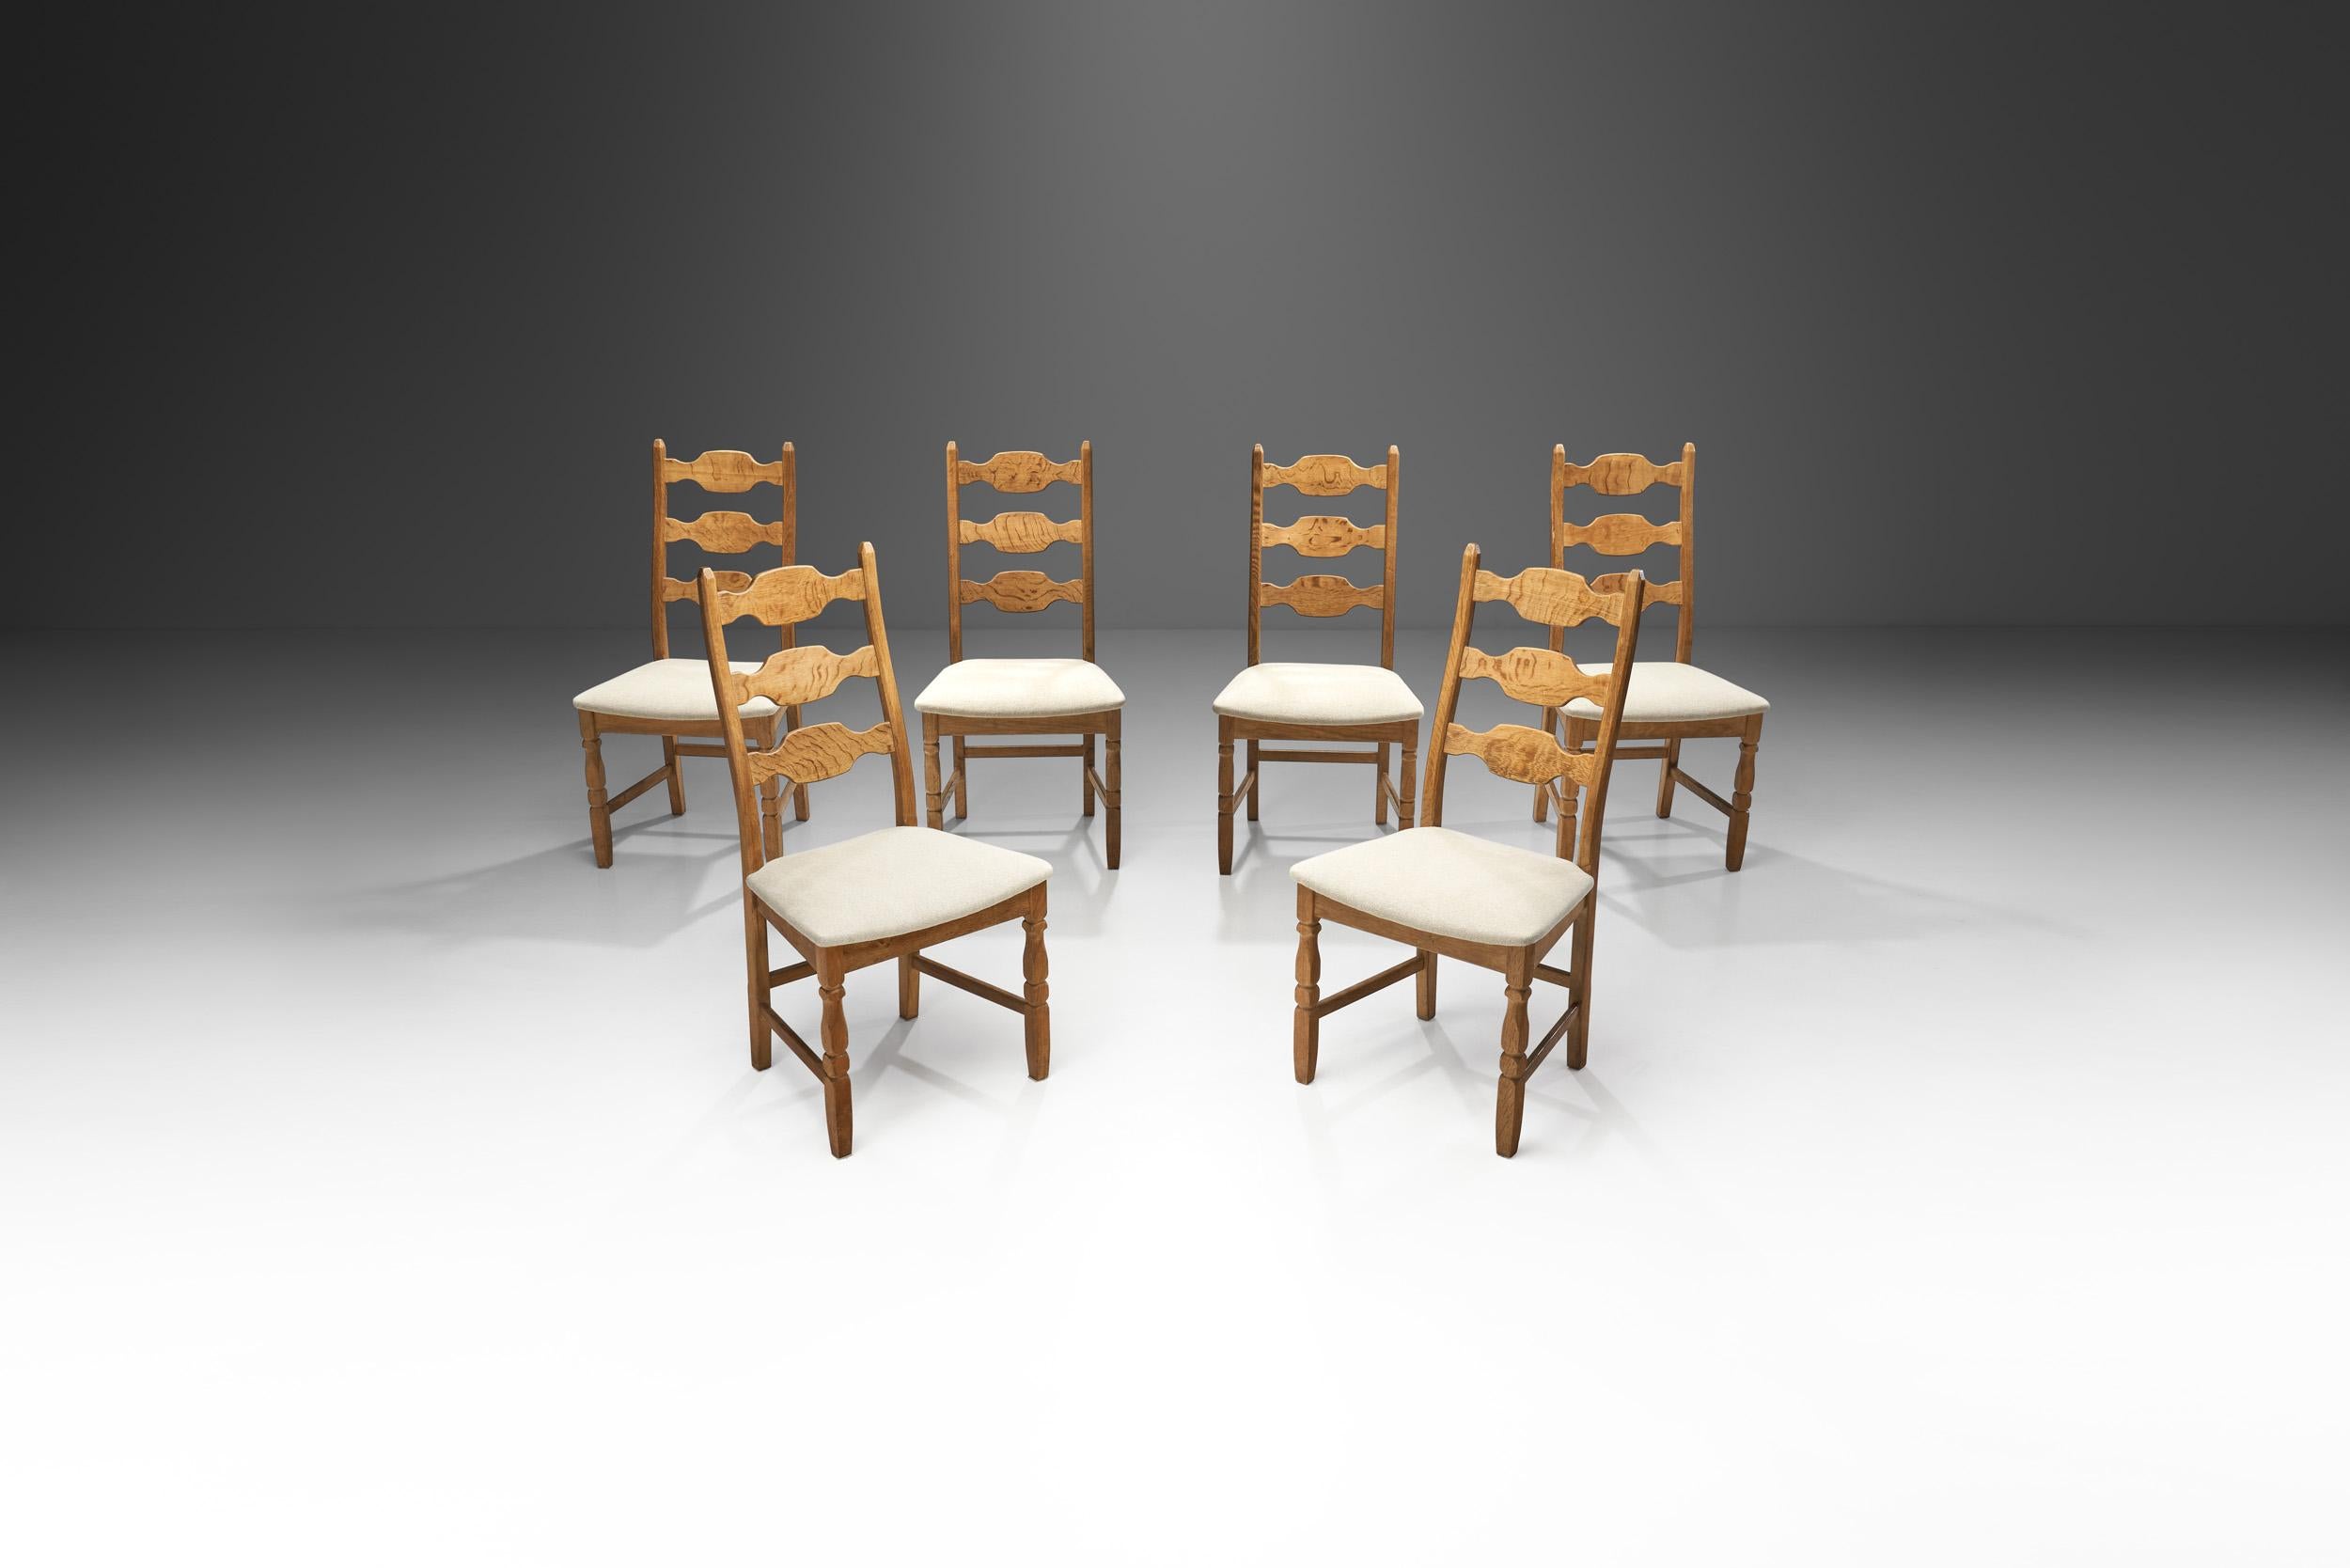 Die Razorblade-Stühle aus Eichenholz von Henning Kjaernulf sind die markantesten Entwürfe des Designers. Diese Garnitur wurde von der dänischen Firma EG Kvalitetsmöbel in den 1960er Jahren hergestellt und ist somit eine echte dänische Garnitur aus